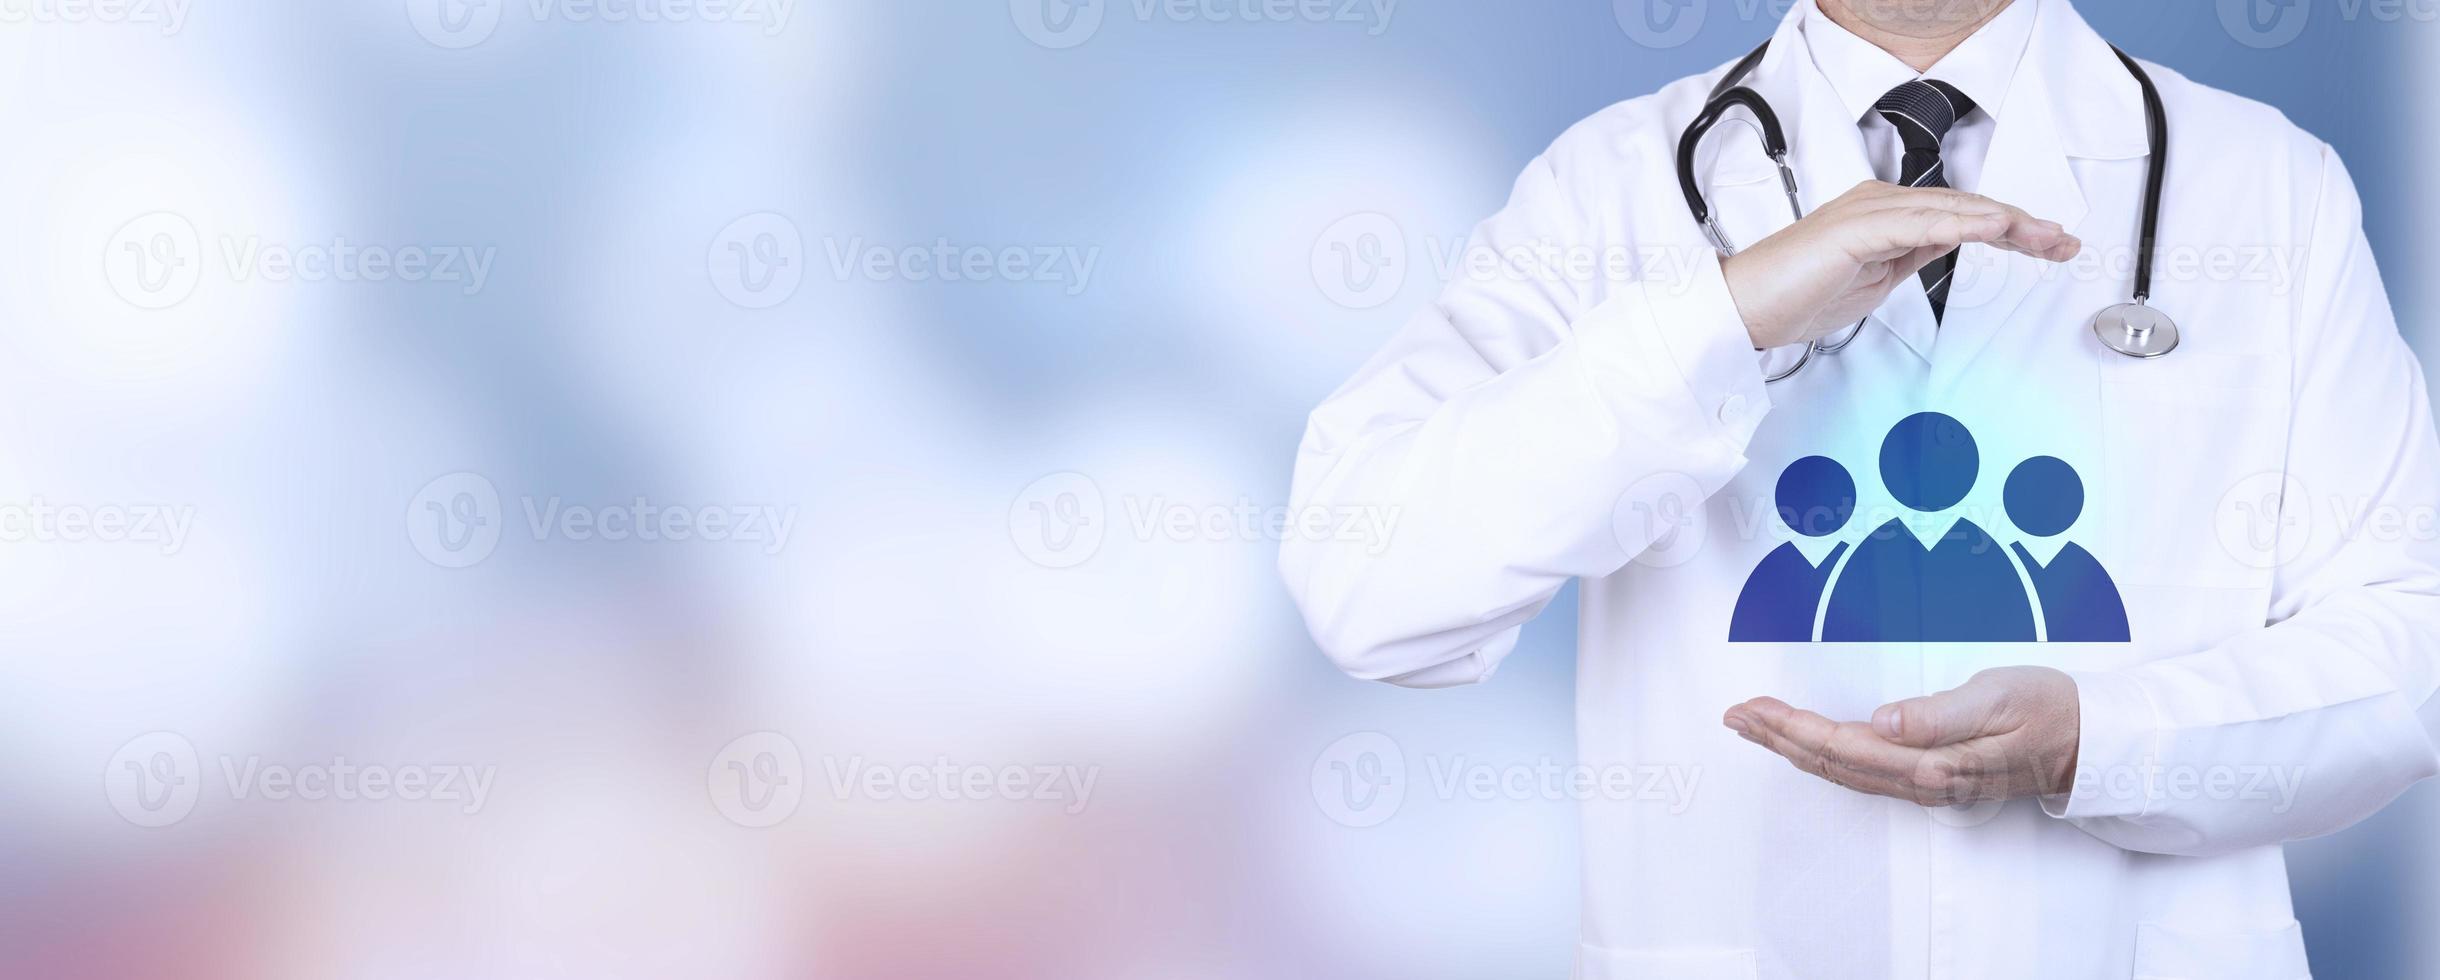 saúde, seguro médico, seguro de vida para toda a família. um médico praticante de jaleco branco com um gesto de mão protetor e um símbolo da família. copie o espaço. foto